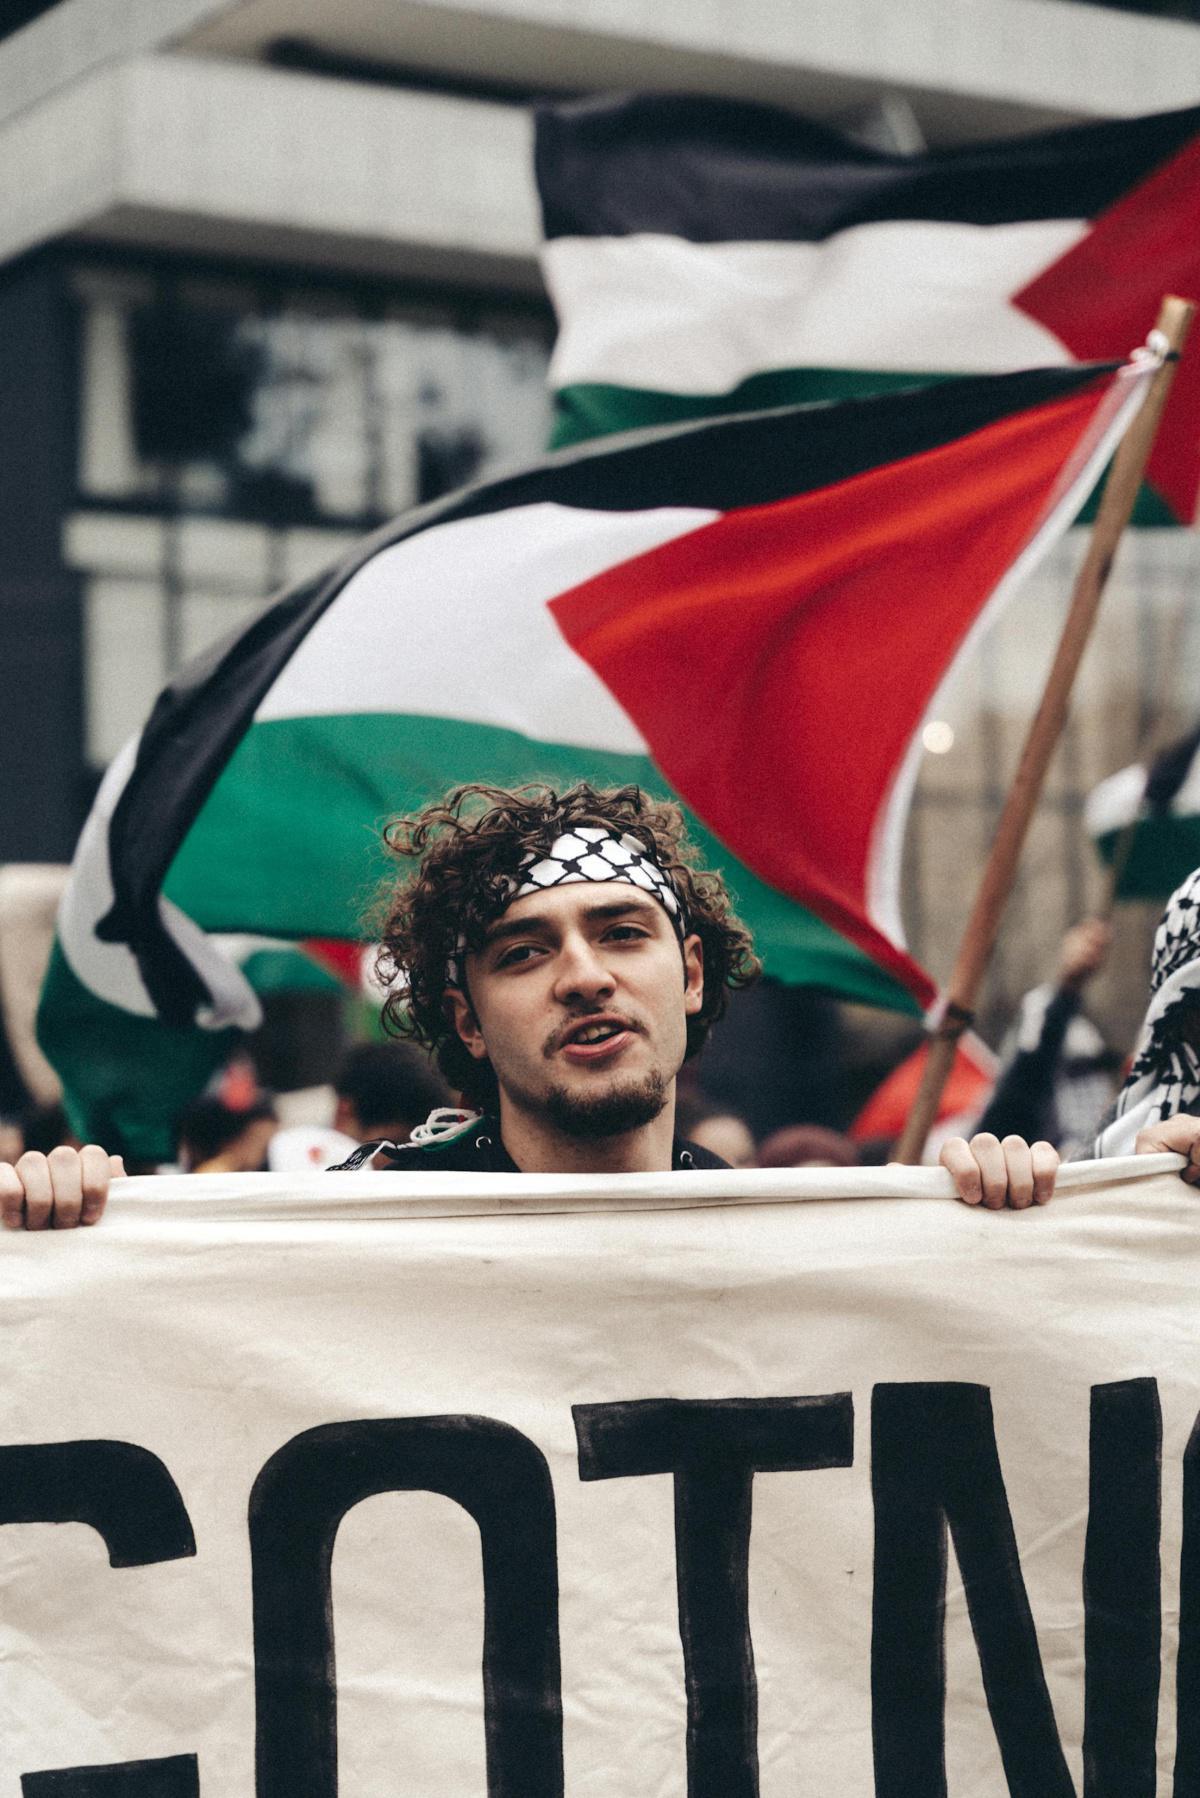 منتدى وسائل الإعلام الدولي: متحدون من أجل الاعتراف بدولة فلسطينية مستقلة